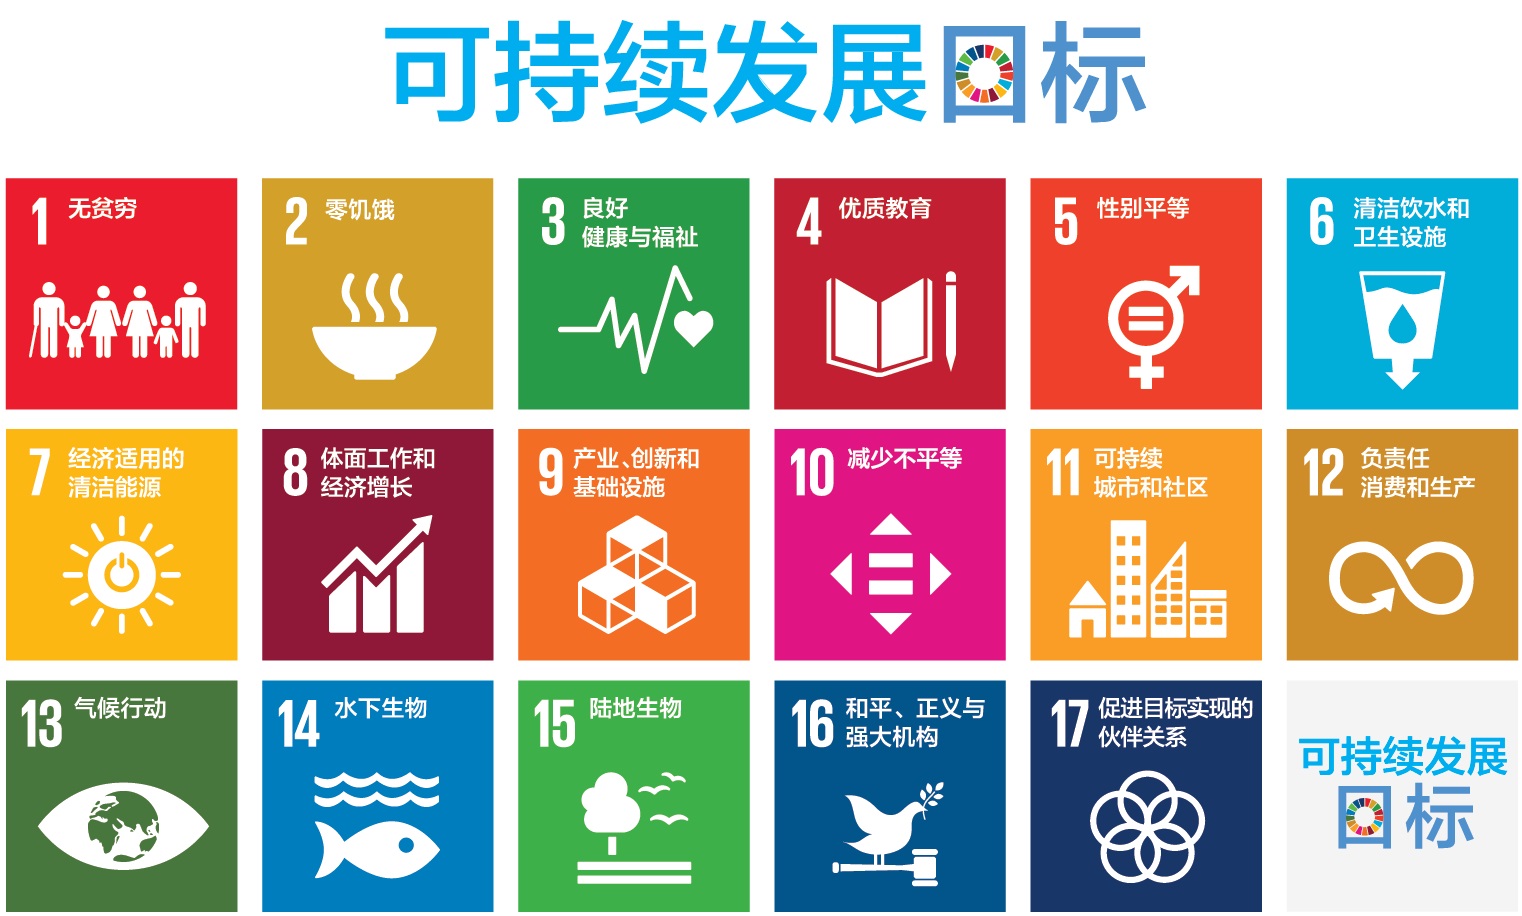 17个可持续发展目标.jpg